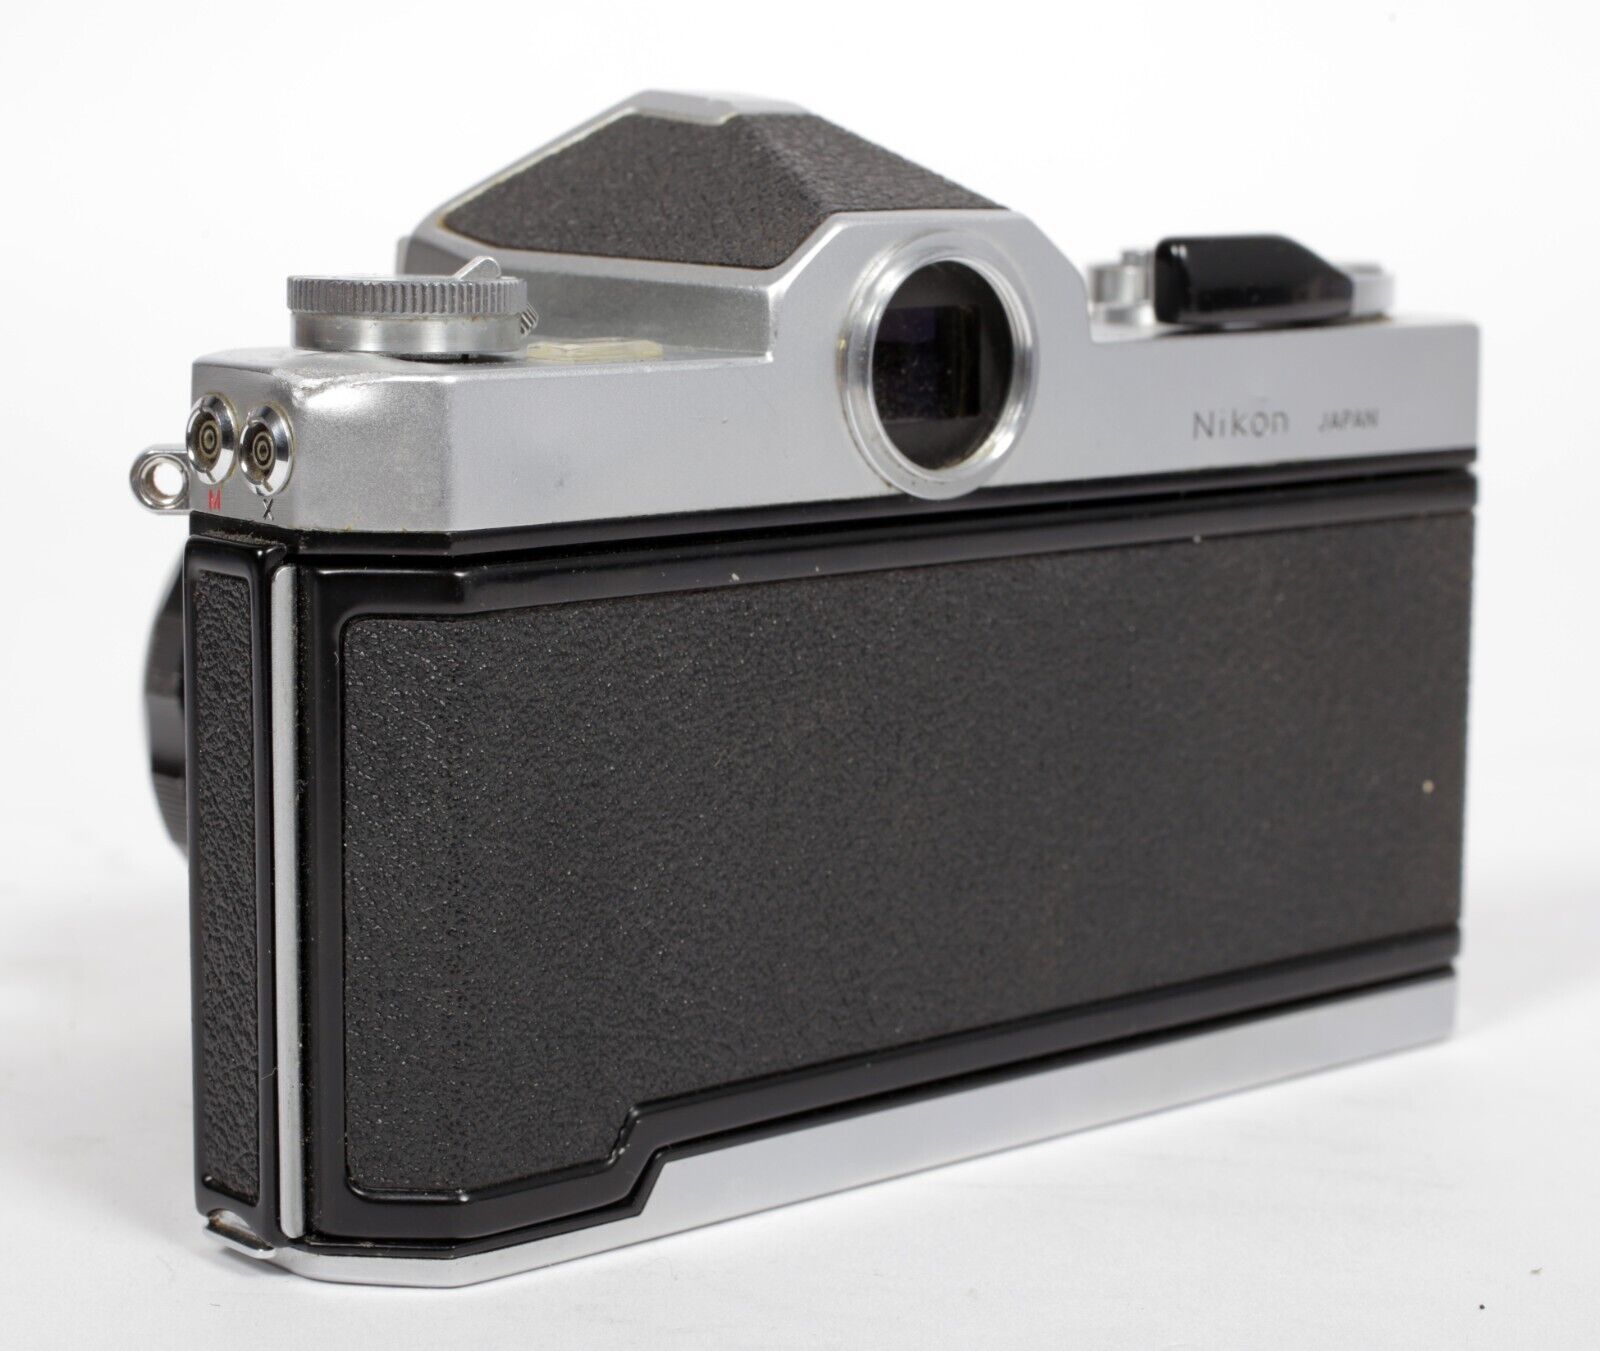 Nikon Nikkormat FTn 35mm SLR film camera with Nikkor H 50mm F2 ...